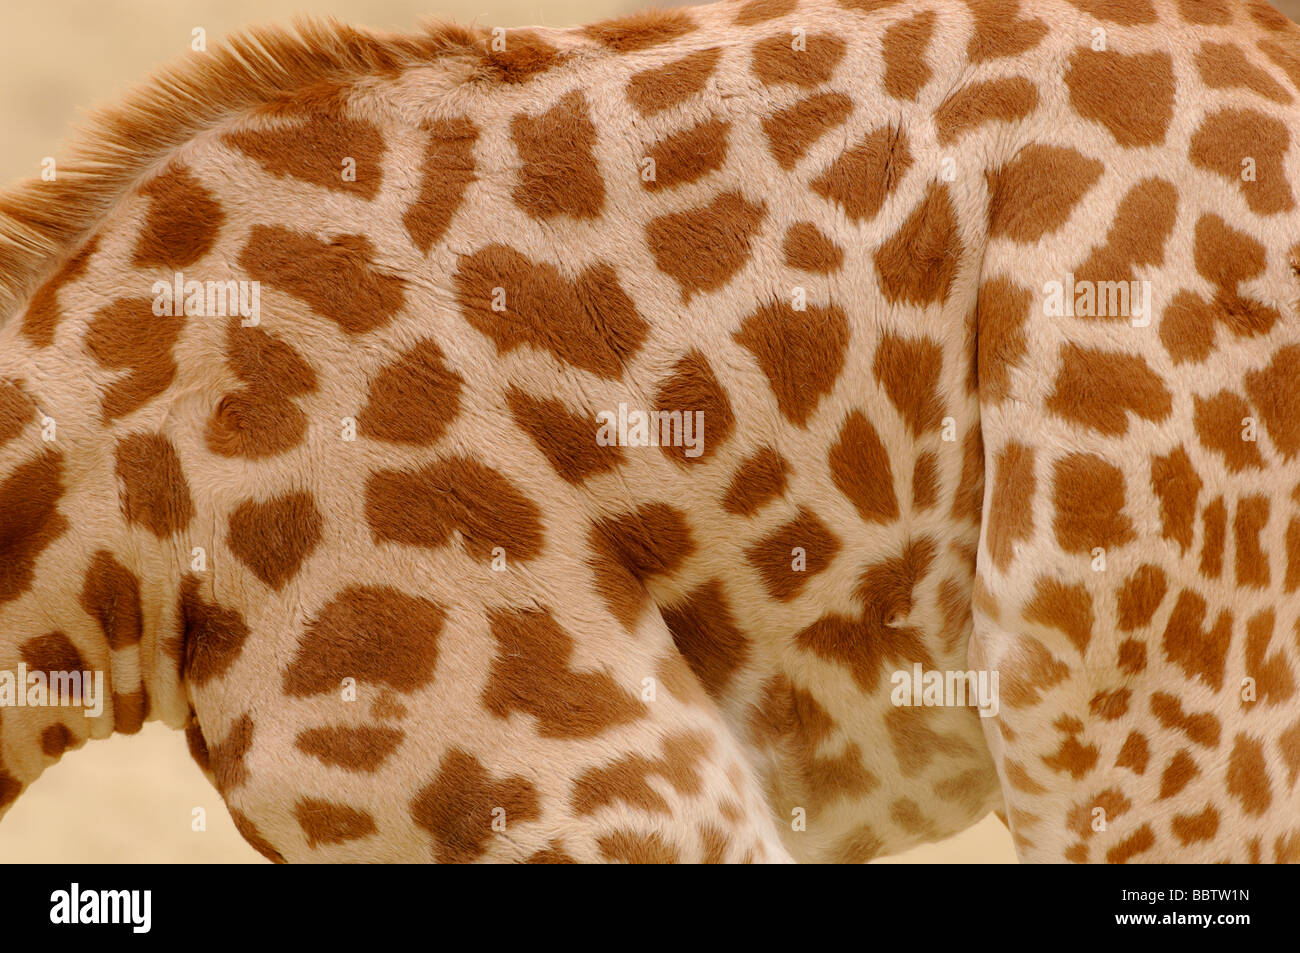 O nigeriano West African Giraffa Giraffa camelopardalis peralta in via di estinzione Foto Stock